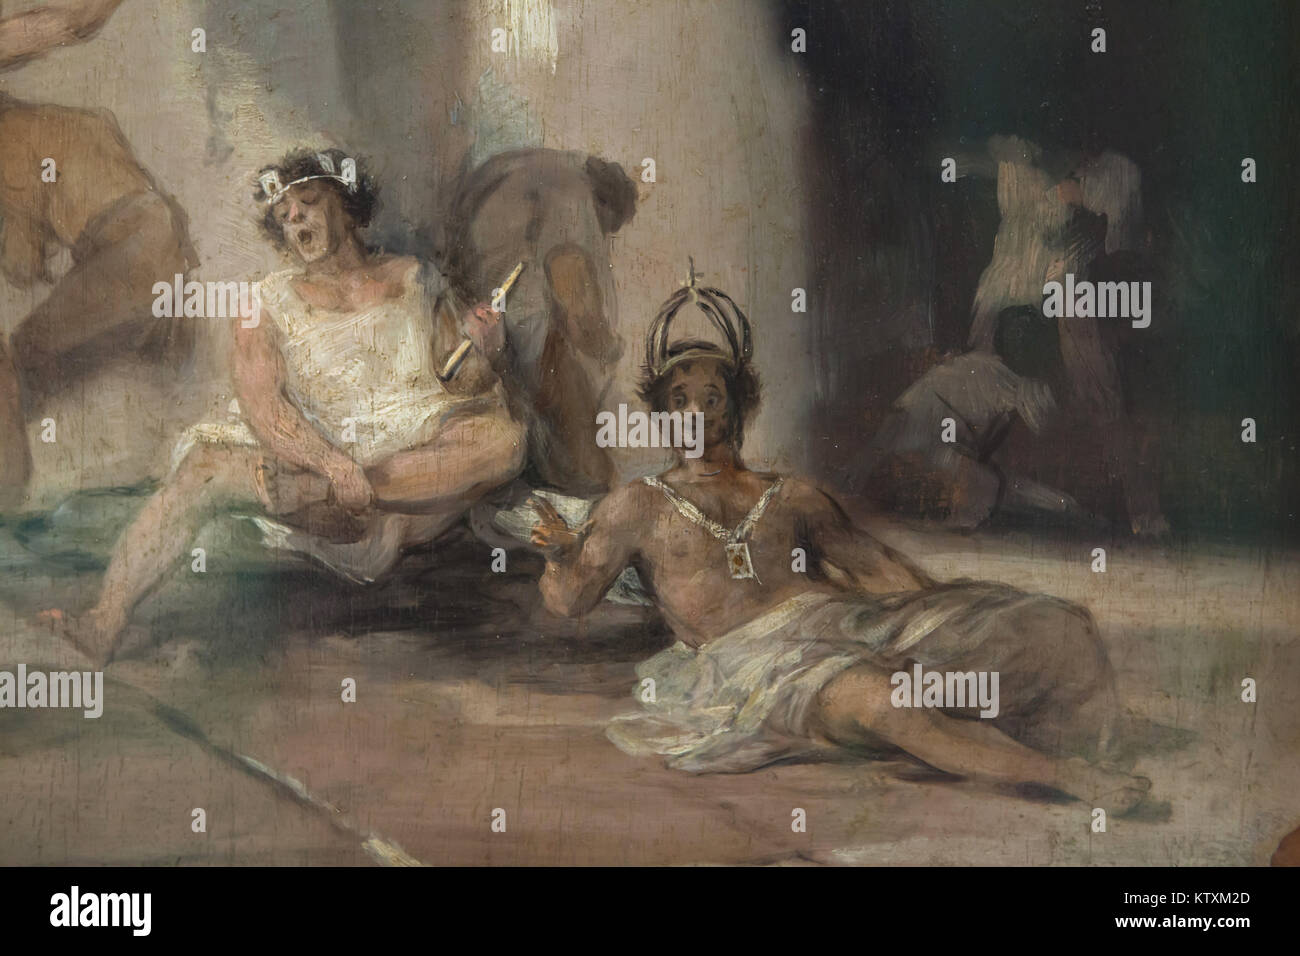 Malades Mentaux, les personnes représentées dans le détail de l'œuvre "l'asile" par le peintre espagnol Francisco Goya (ca. 1812-1819) sur l'affichage à la Real Academia de Bellas Artes de San Fernando (Académie royale des beaux-arts de San Fernando) à Madrid, Espagne. Banque D'Images